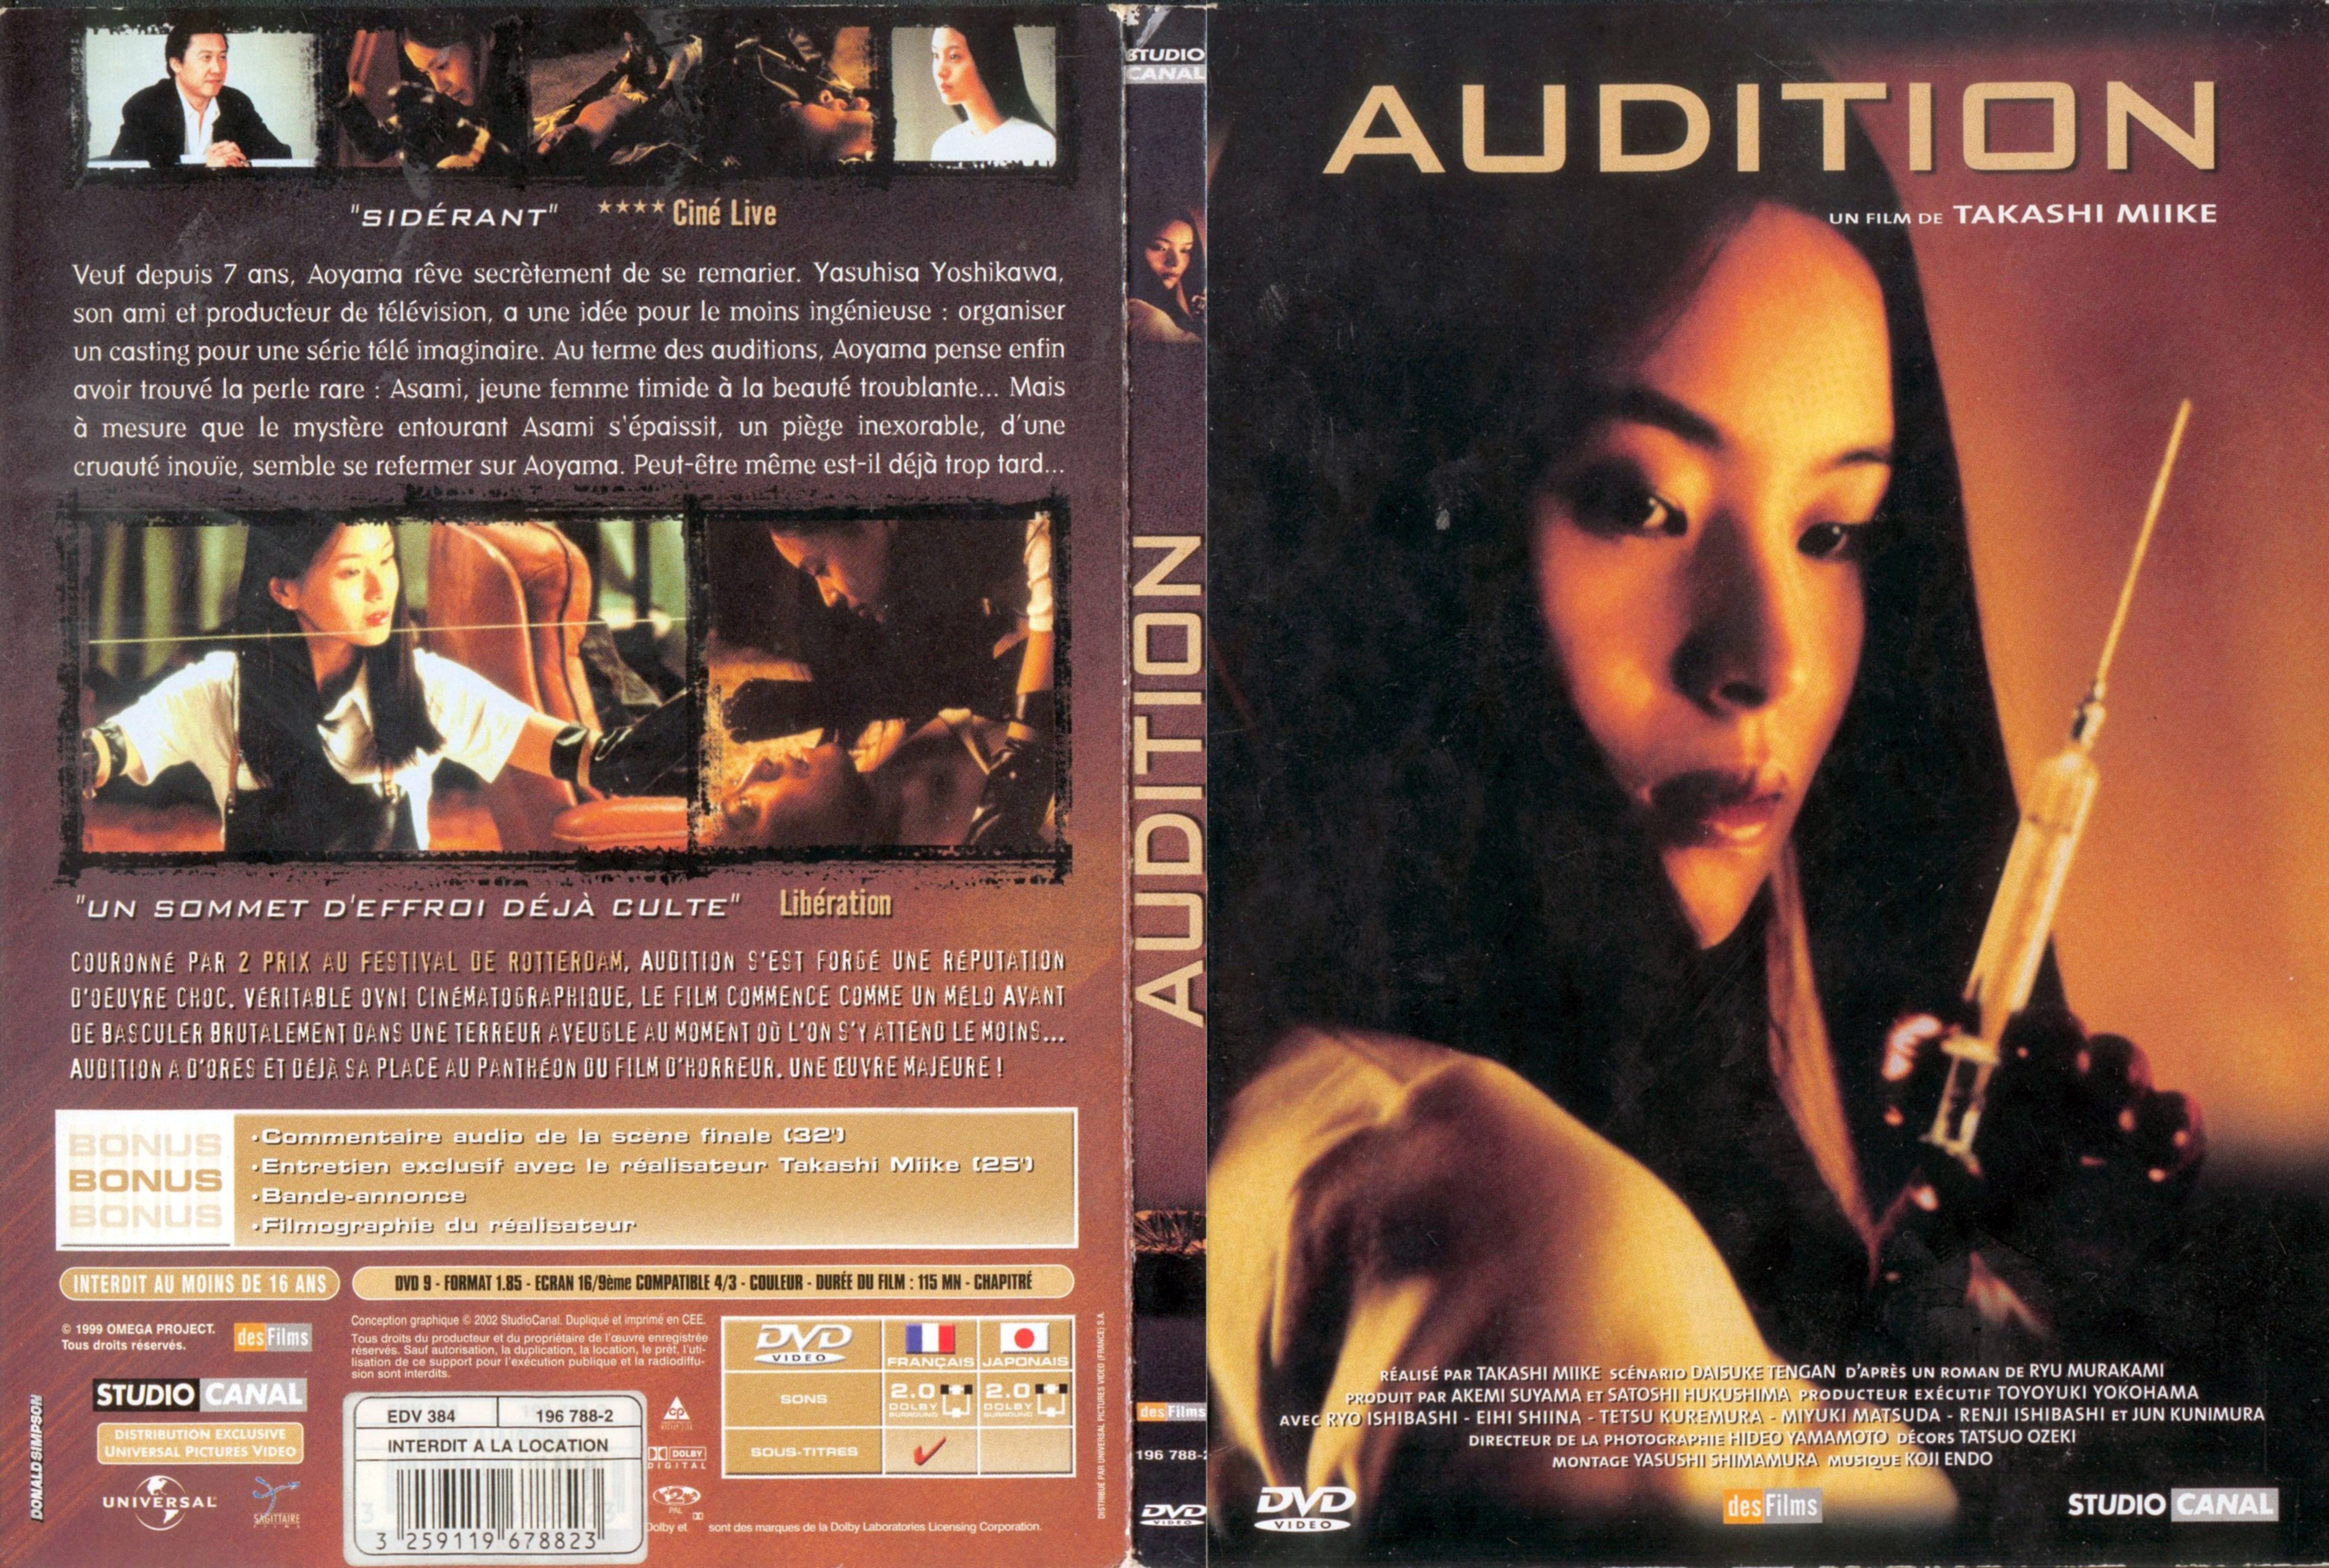 Jaquette DVD Audition v2